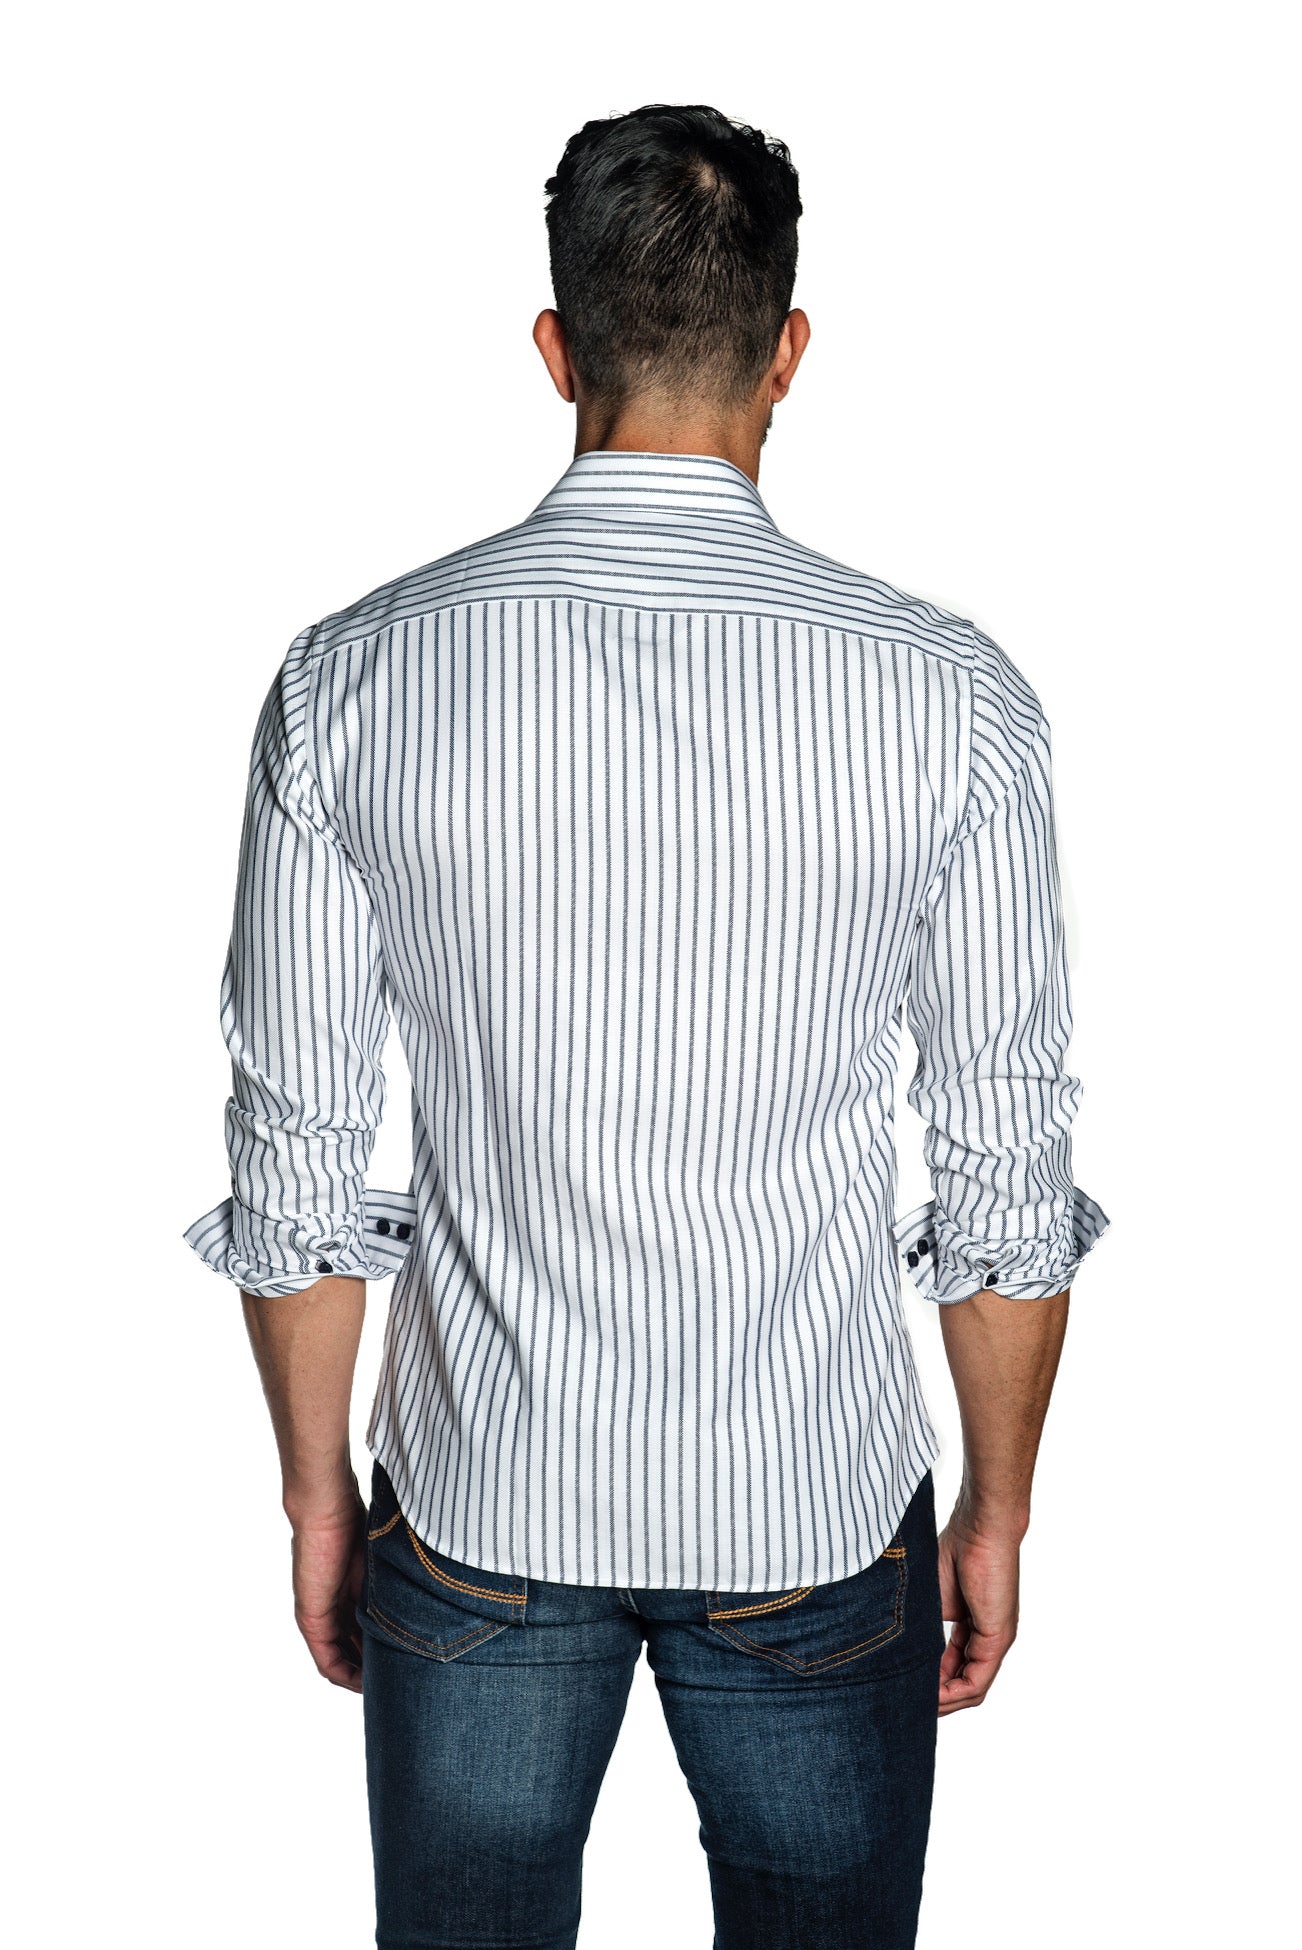 Jared Lang Mens Long Sleeve Shirt